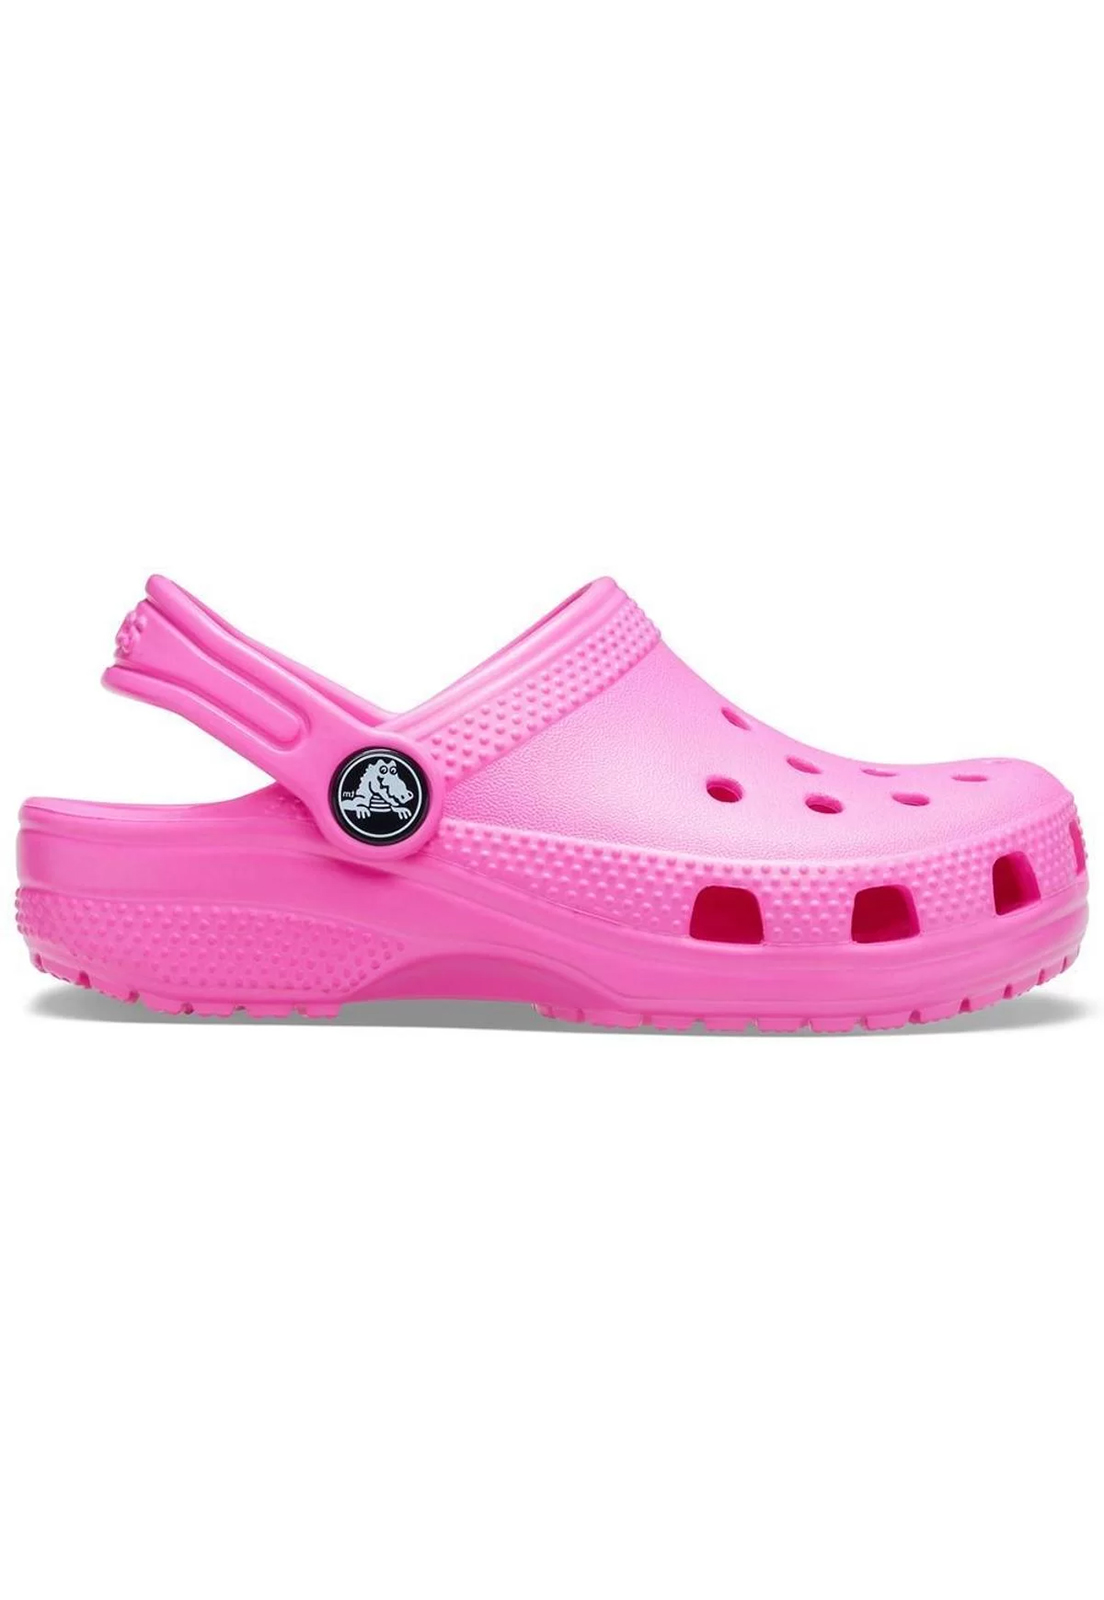 Sandália Crocs Classic Clog Eletric Pink